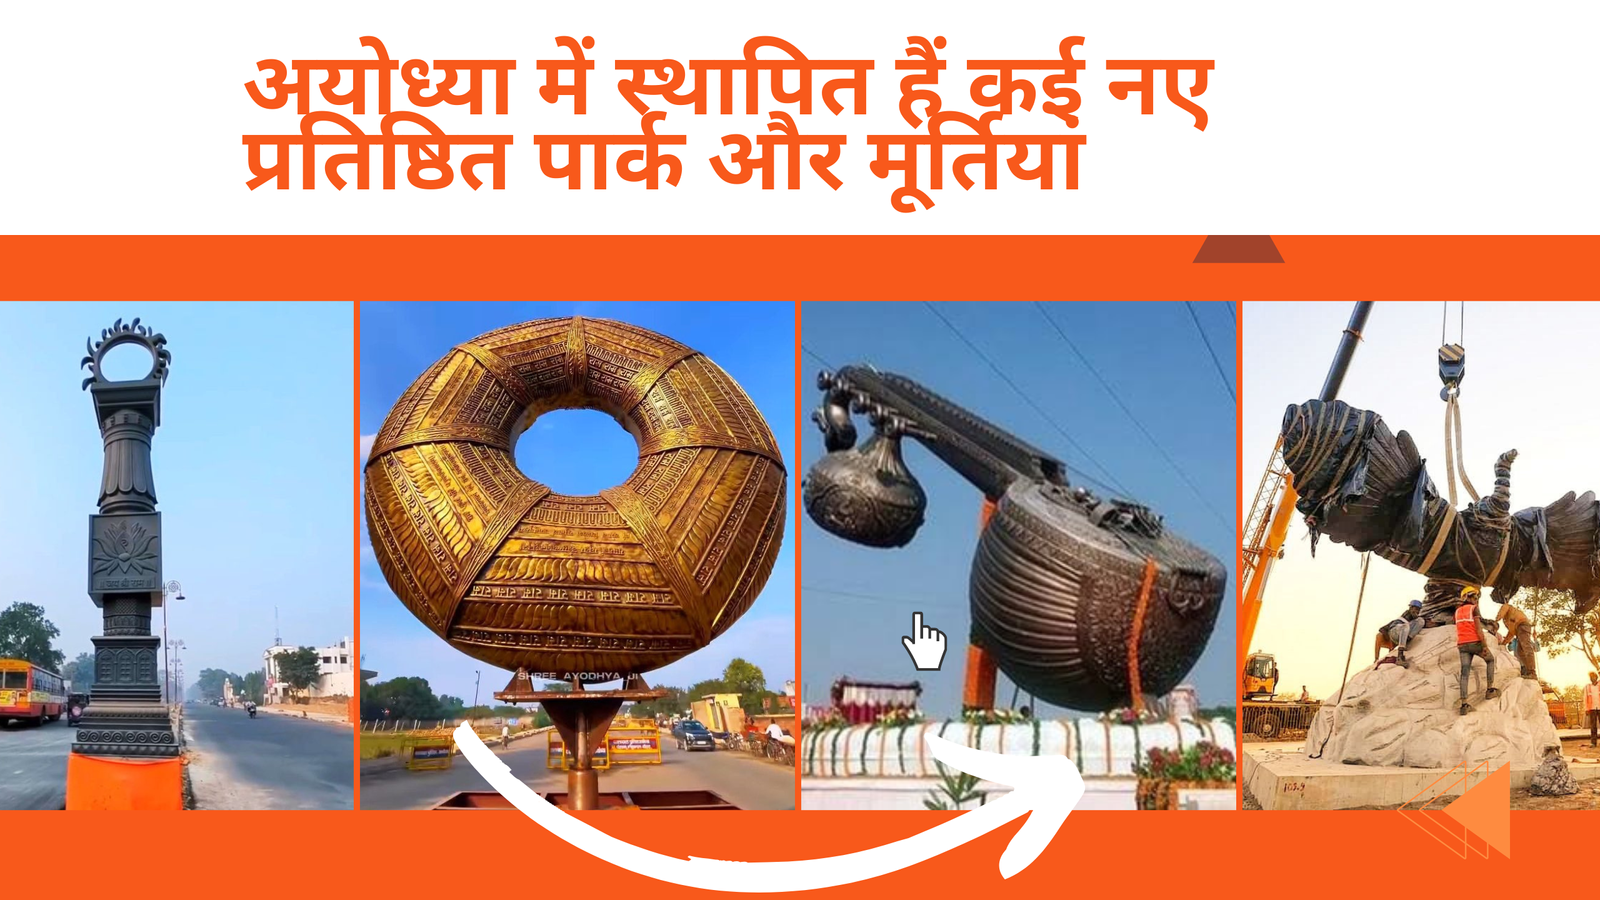 अयोध्या में स्थापित हैं कई नए प्रतिष्ठित पार्क और मूर्तियां